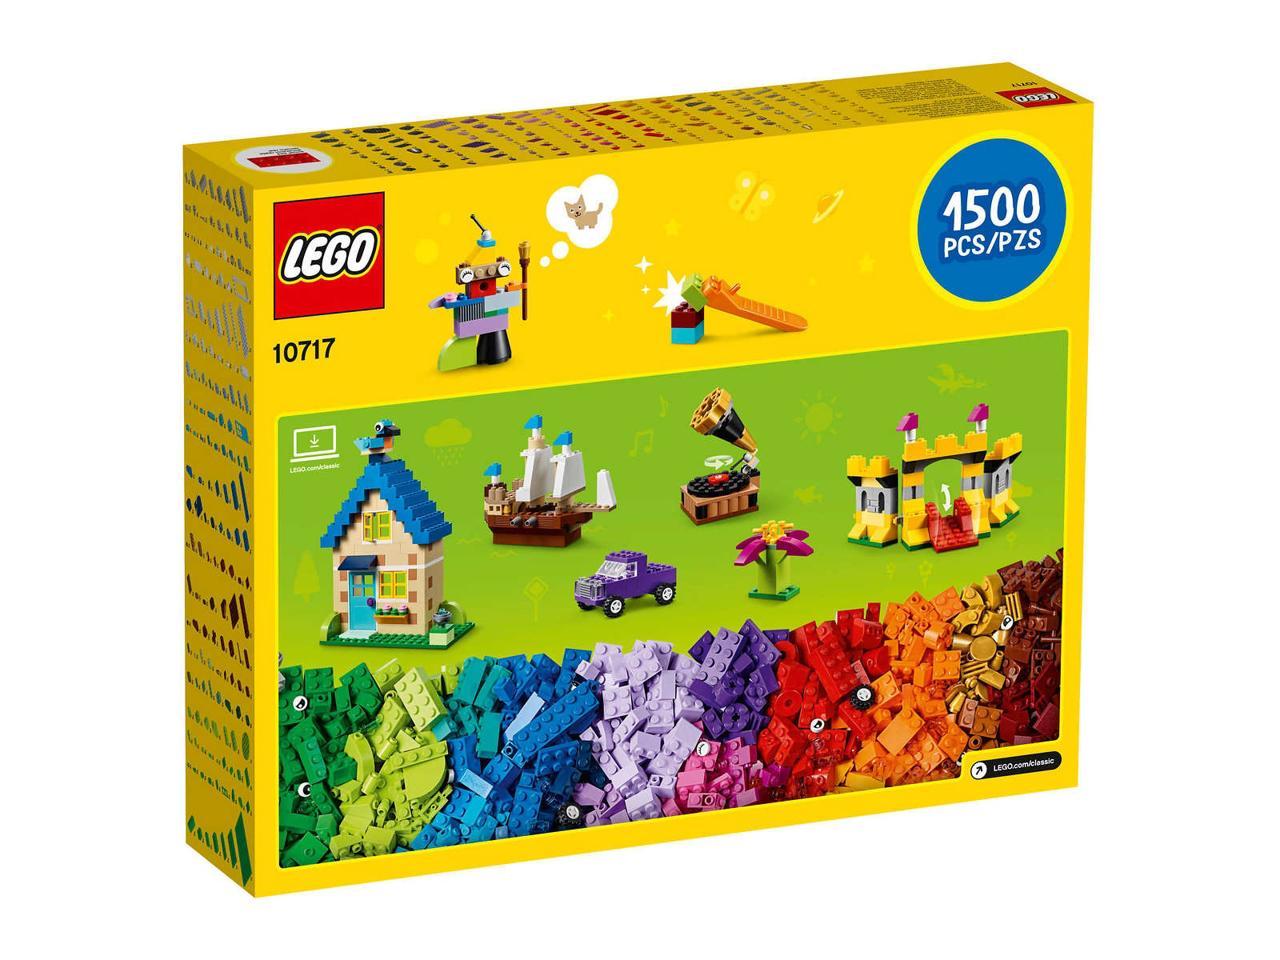 LEGO Friends Plates Bricks Pieces Accessories 100 Random Parts Per Order mix 